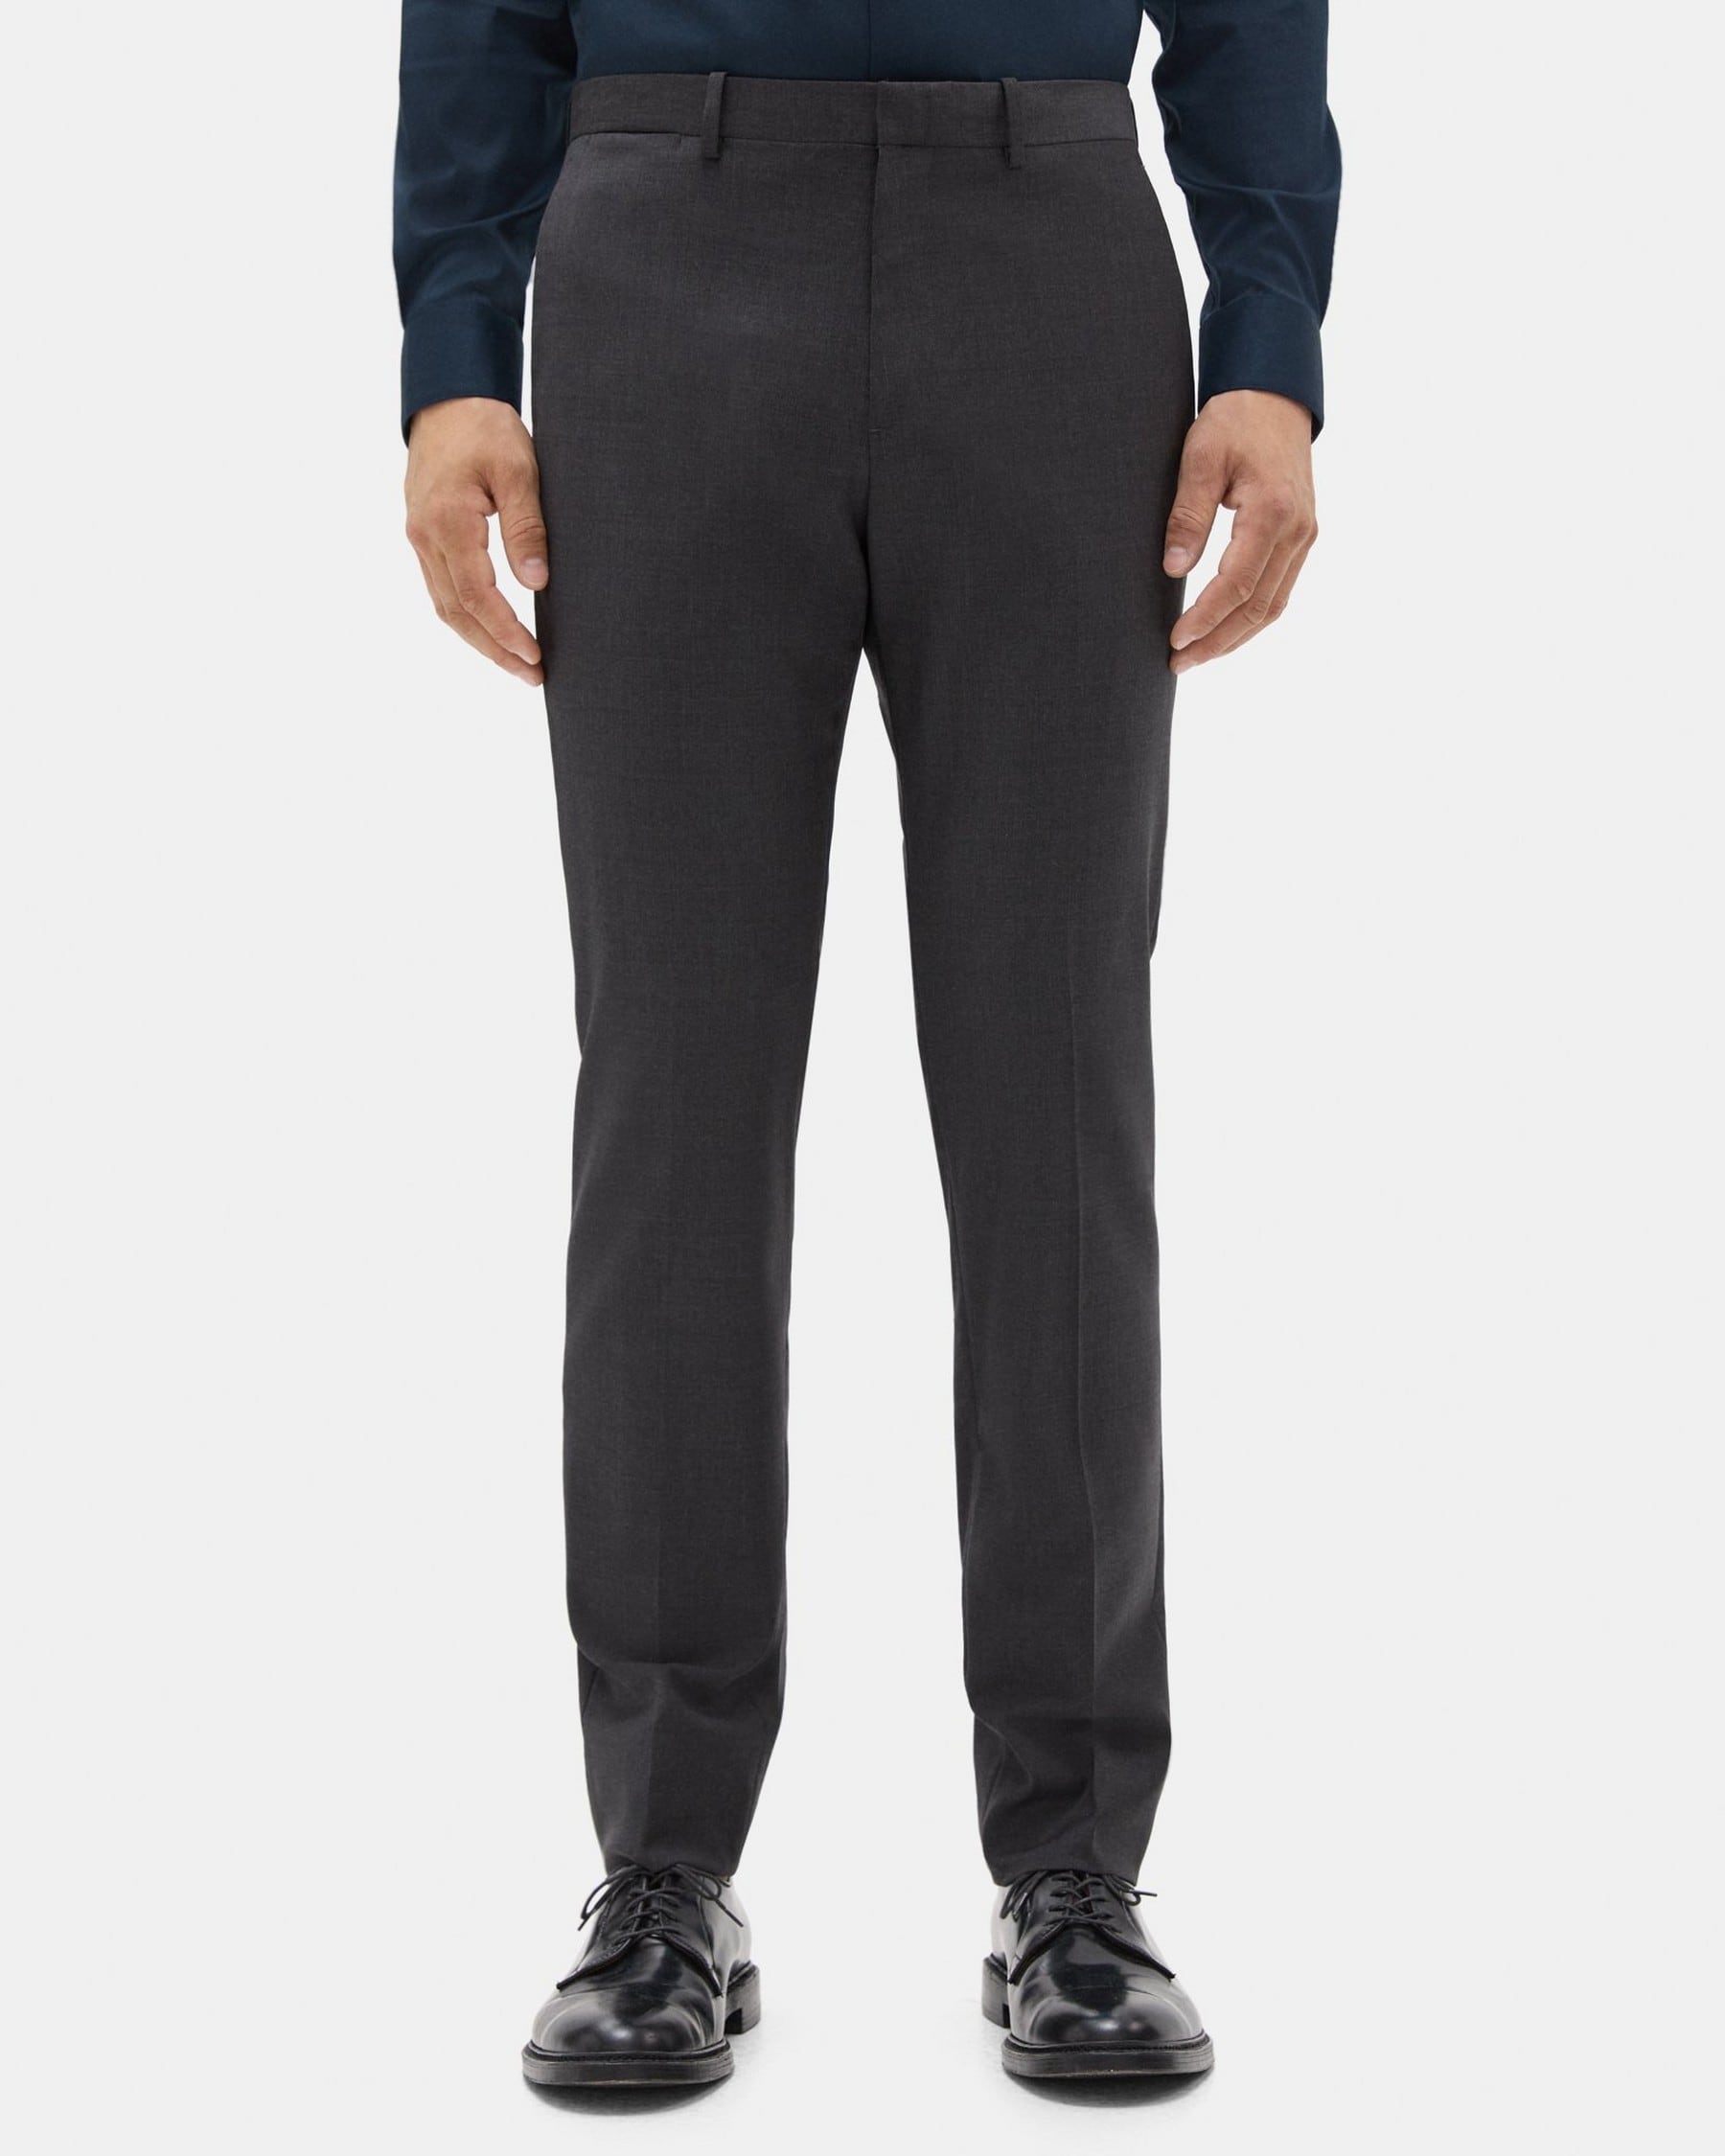 띠어리 Theory Slim-Fit Suit Pant in Sartorial Suiting,CHARCOAL HEATHER